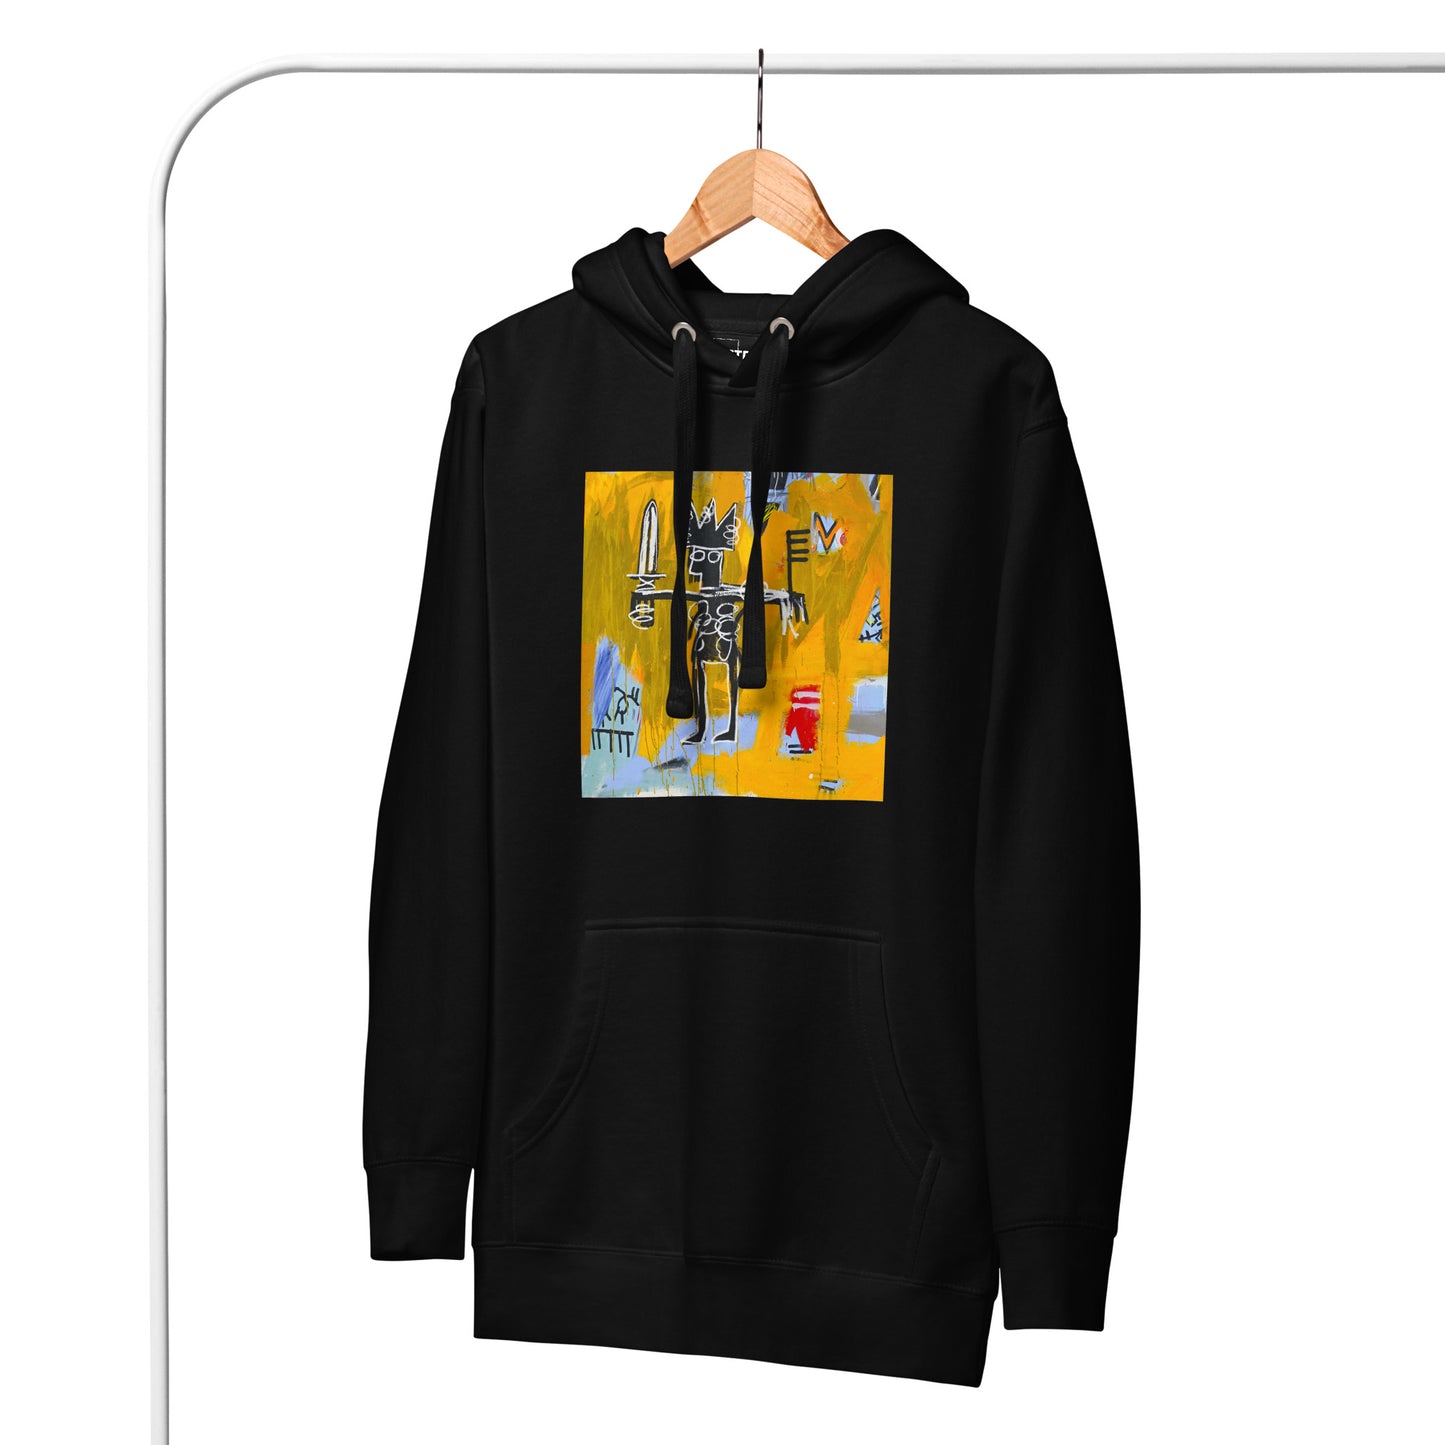 Jean-Michel Basquiat "Julius Caesar on Gold" Artwork Printed Premium Streetwear Sweatshirt Hoodie Black